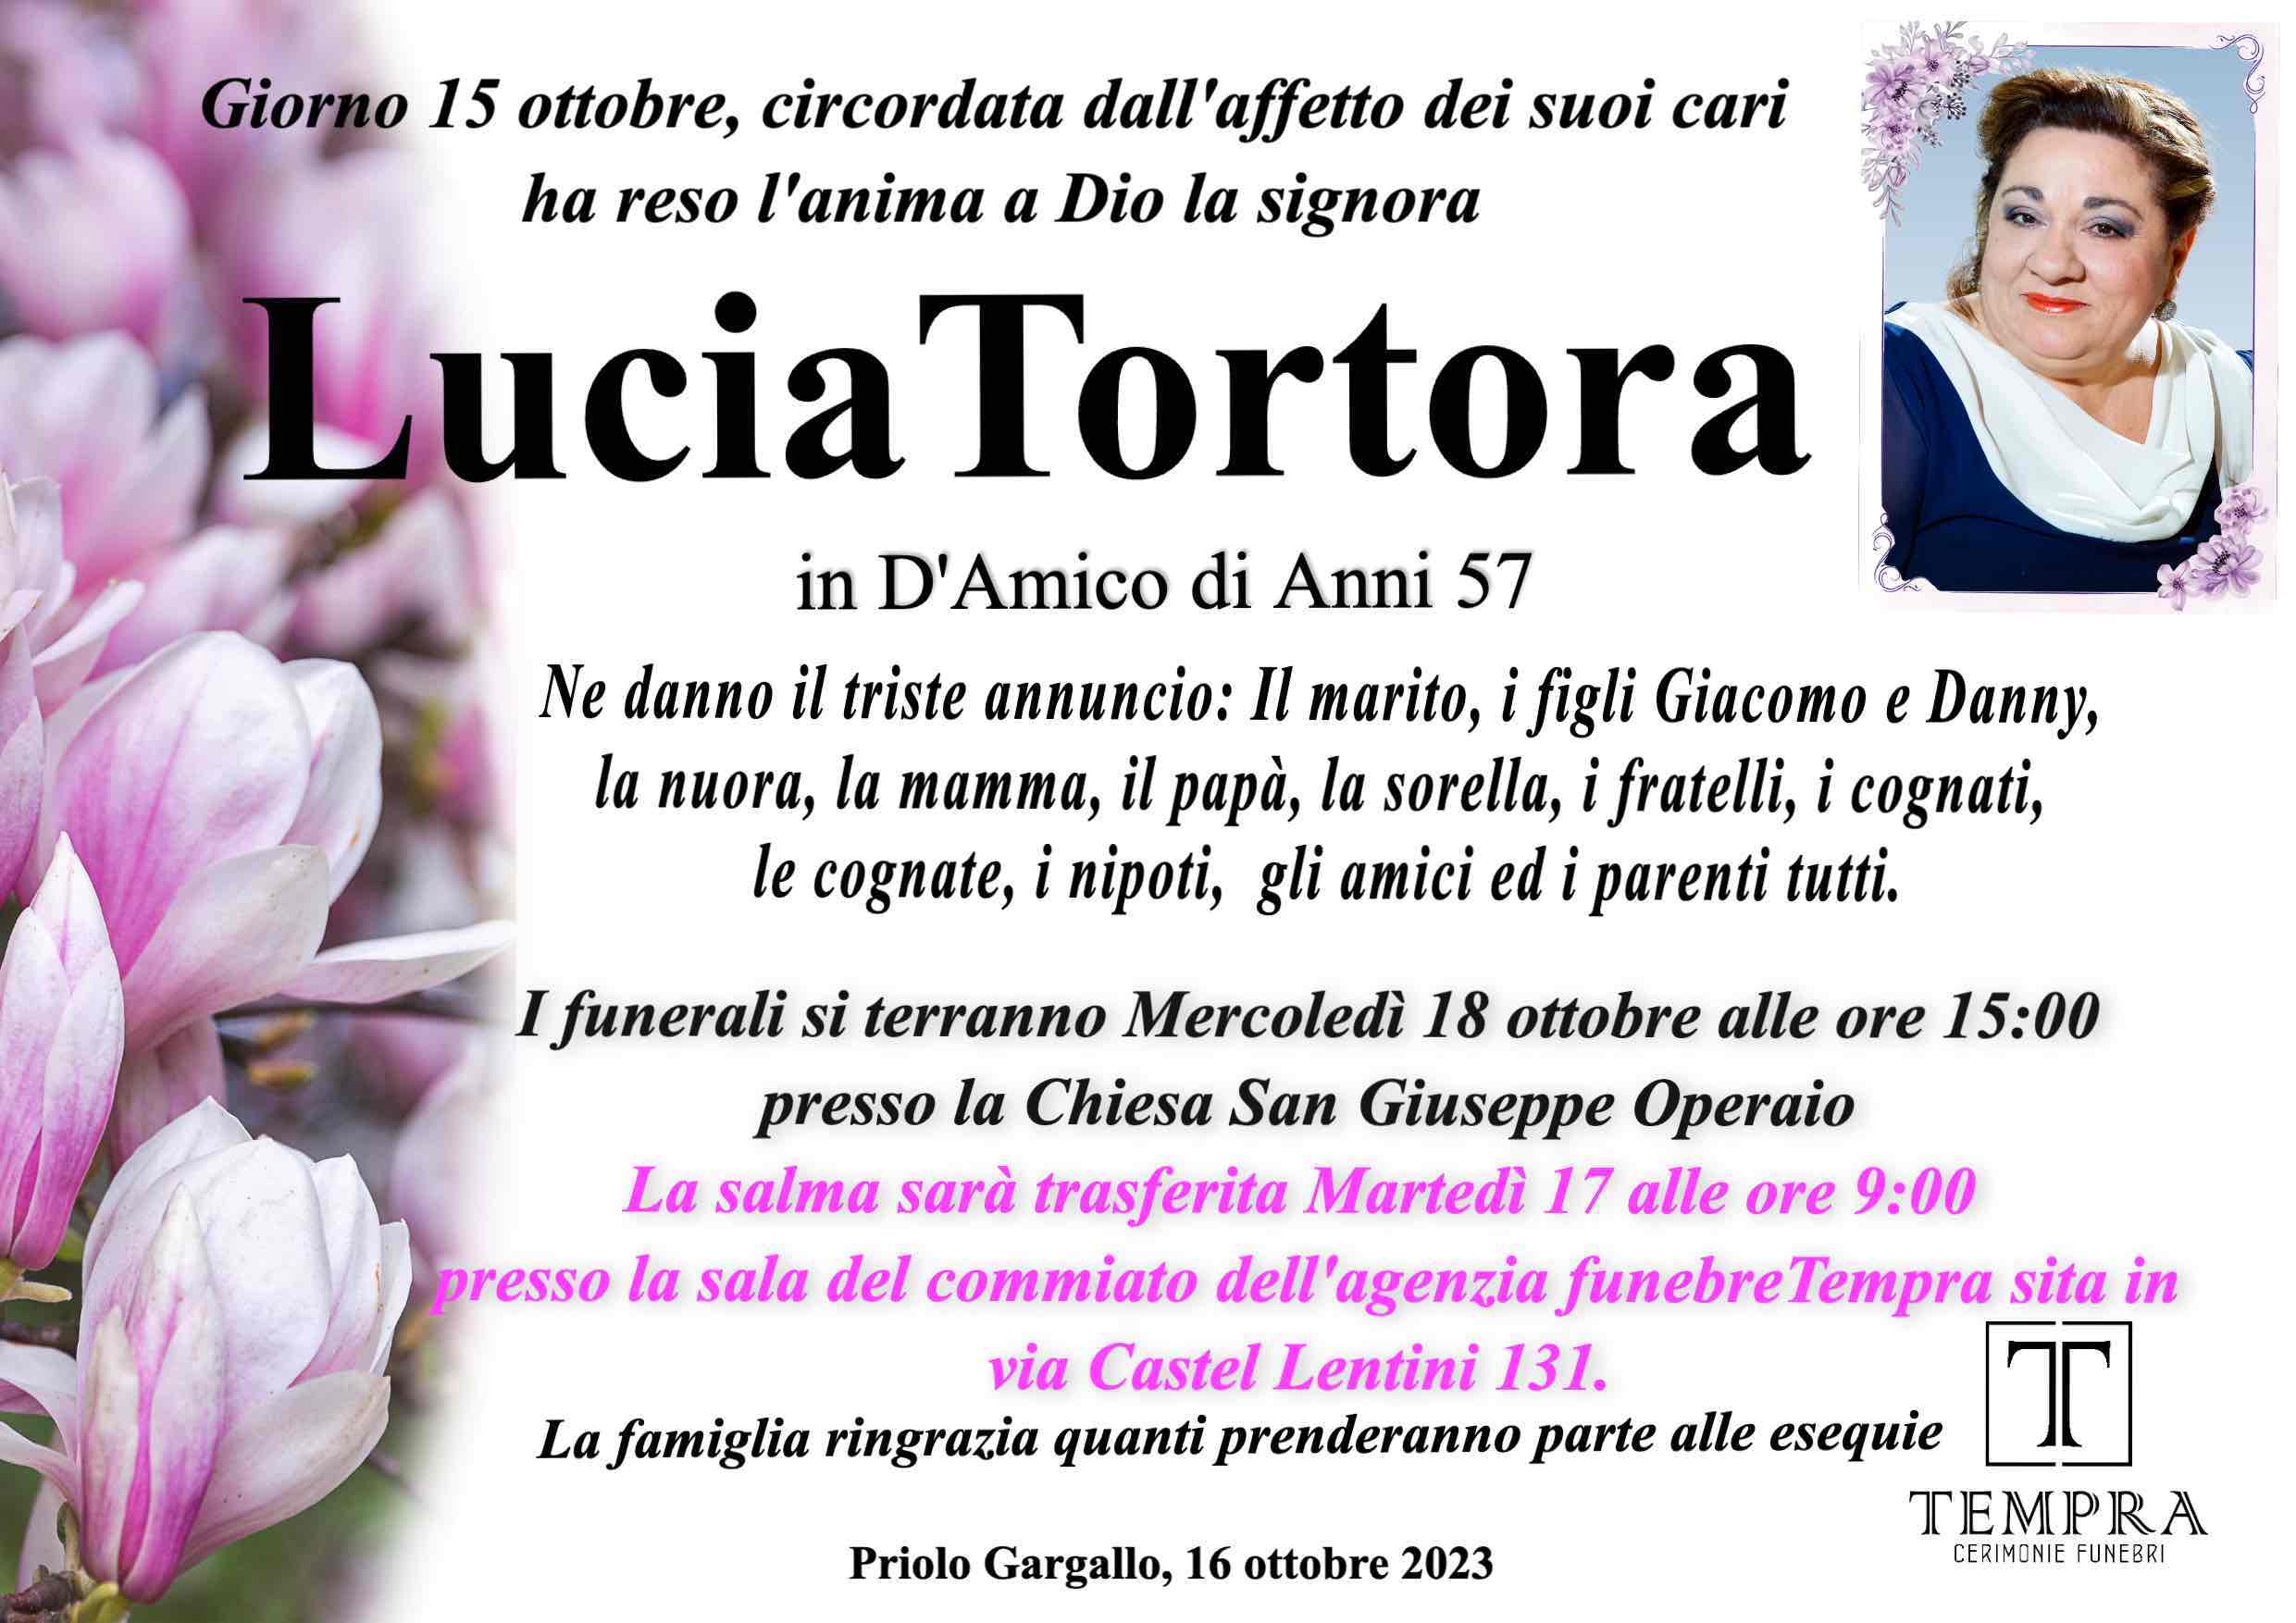 Lucia Tortora